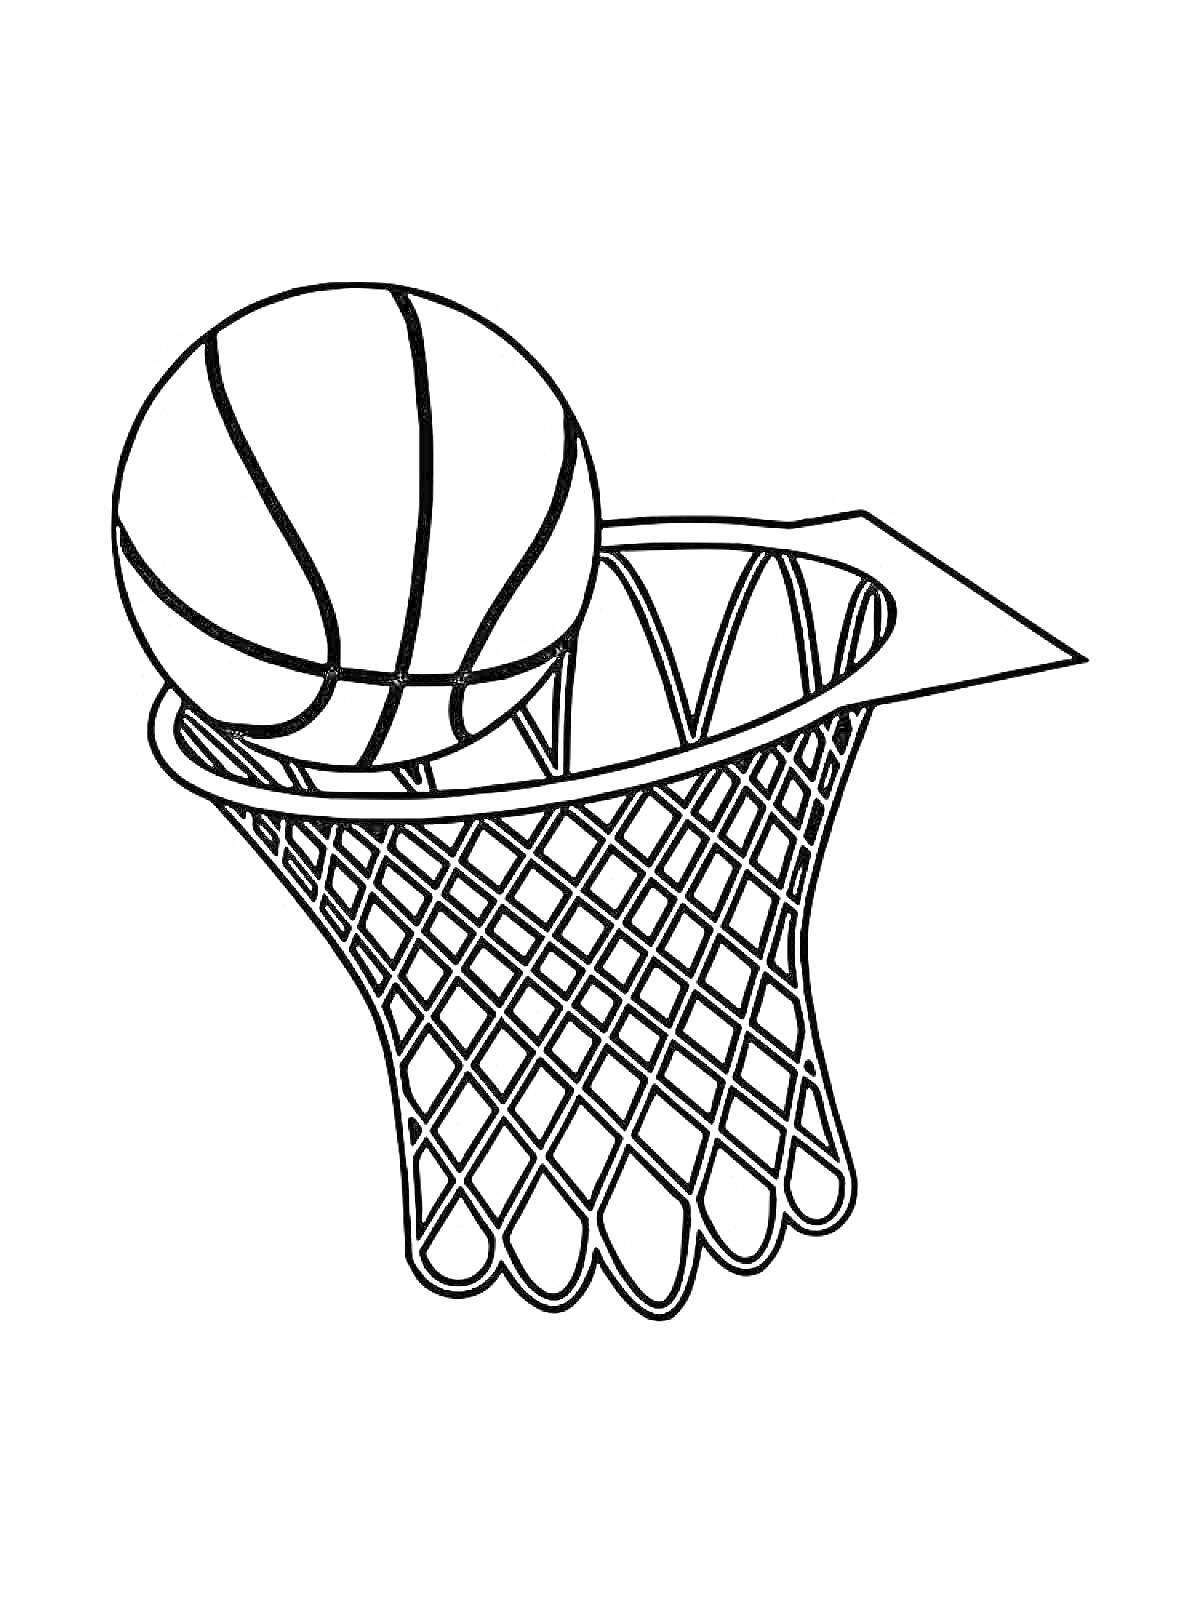 Раскраска Баскетбольный мяч в корзине